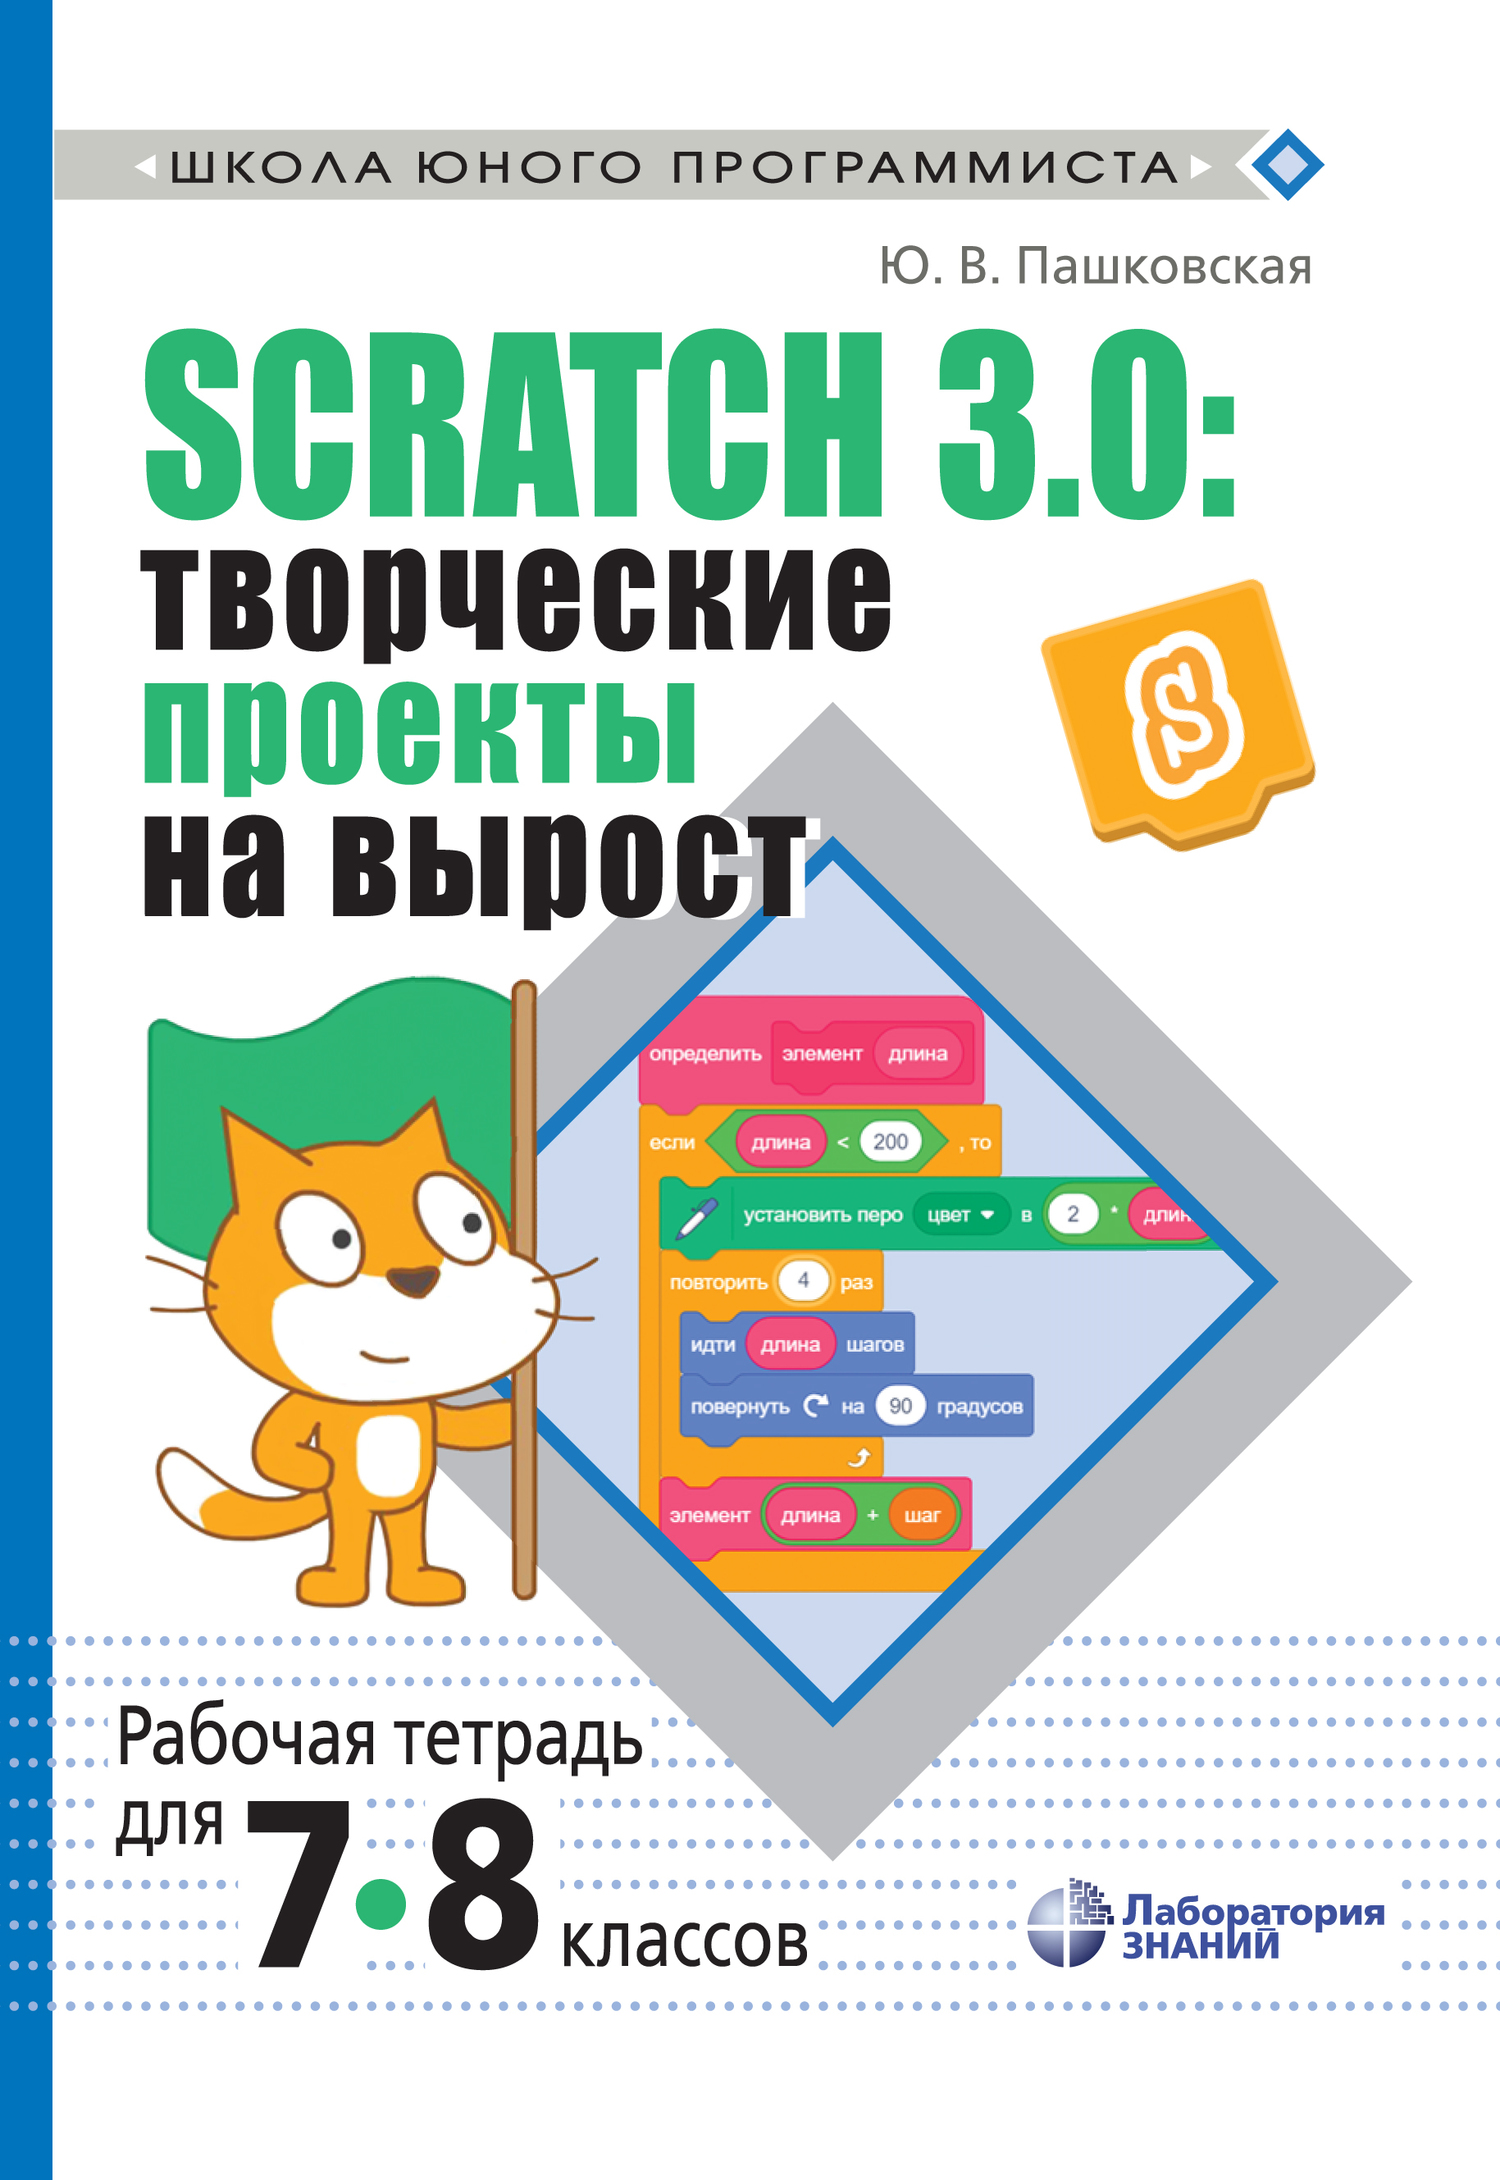 Книга Школа юного программиста Scratch 3.0: творческие проекты на вырост. Рабочая тетрадь для 7–8 классов созданная Ю. В. Пашковская может относится к жанру детская познавательная и развивающая литература, информатика 7 класс, информатика 8 класс, программирование, рабочие тетради / прописи. Стоимость электронной книги Scratch 3.0: творческие проекты на вырост. Рабочая тетрадь для 7–8 классов с идентификатором 42915447 составляет 424.00 руб.